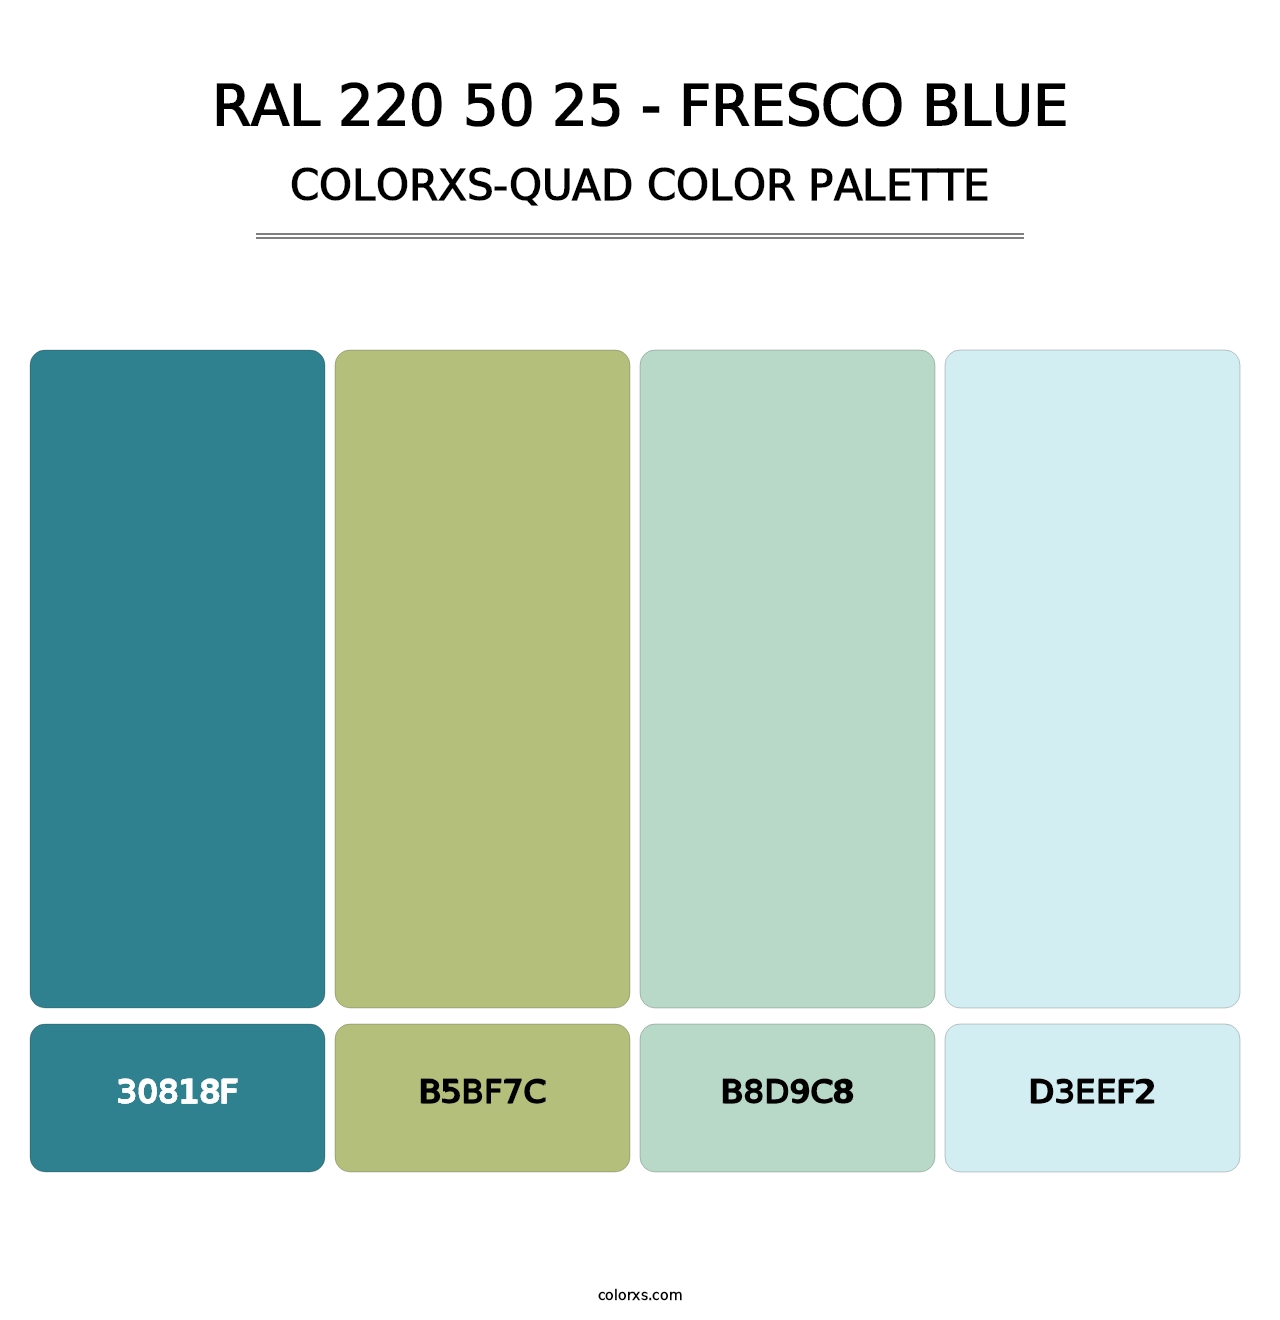 RAL 220 50 25 - Fresco Blue - Colorxs Quad Palette